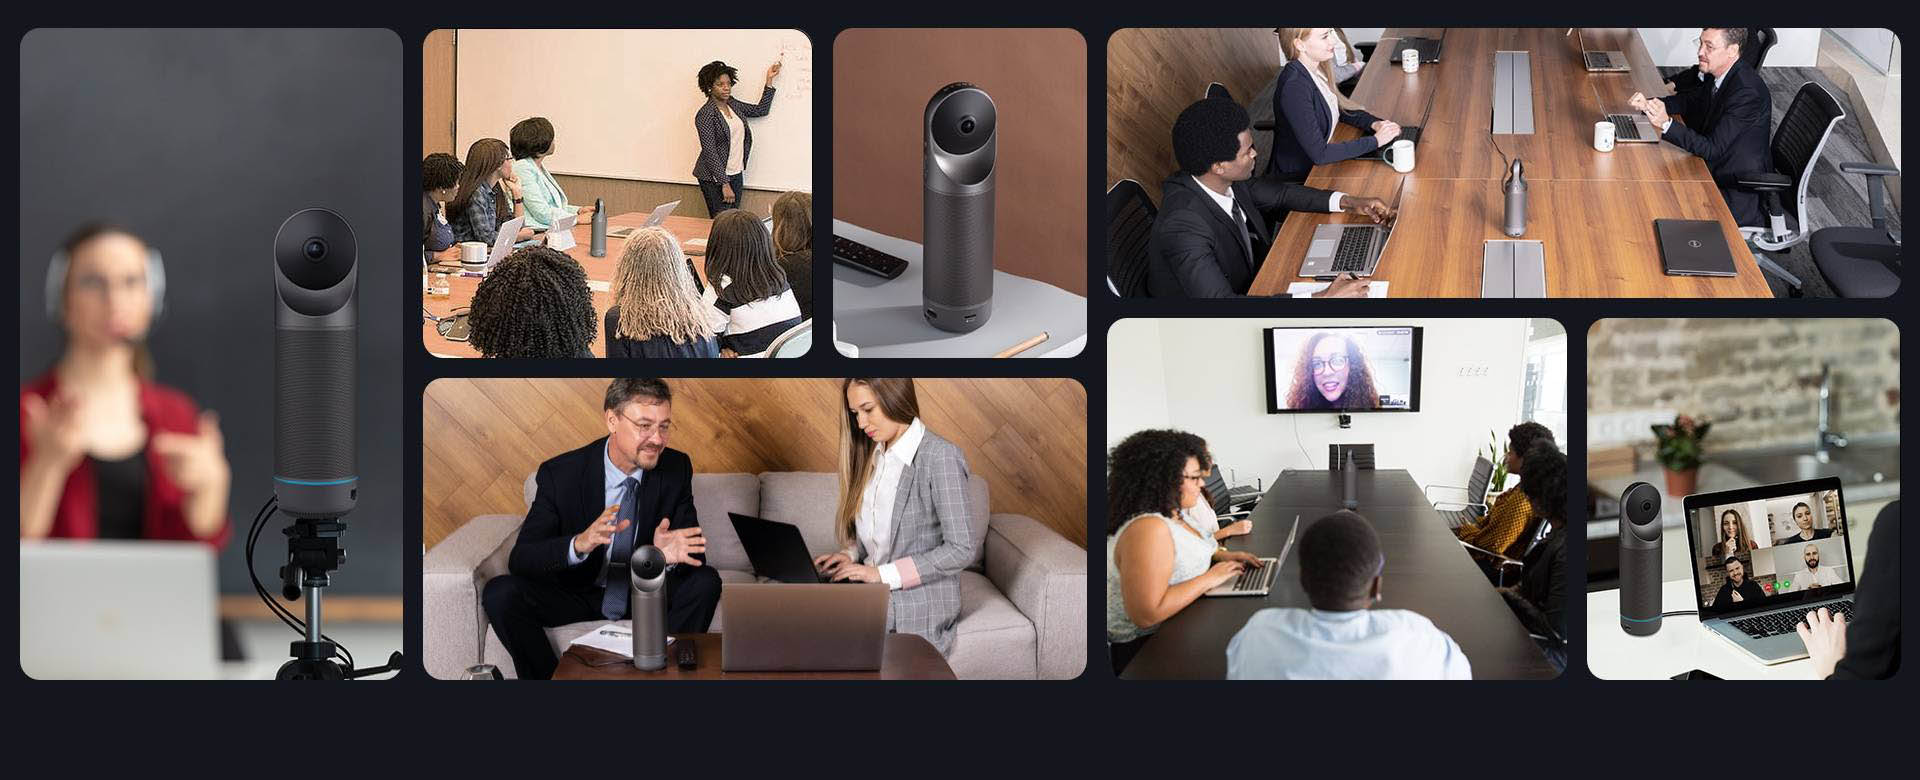 Camara de videoconferencia KANDAO Meeting Pro 360º Full HD - CAMPUSPDI -  Tecnologia e innovación para la formación